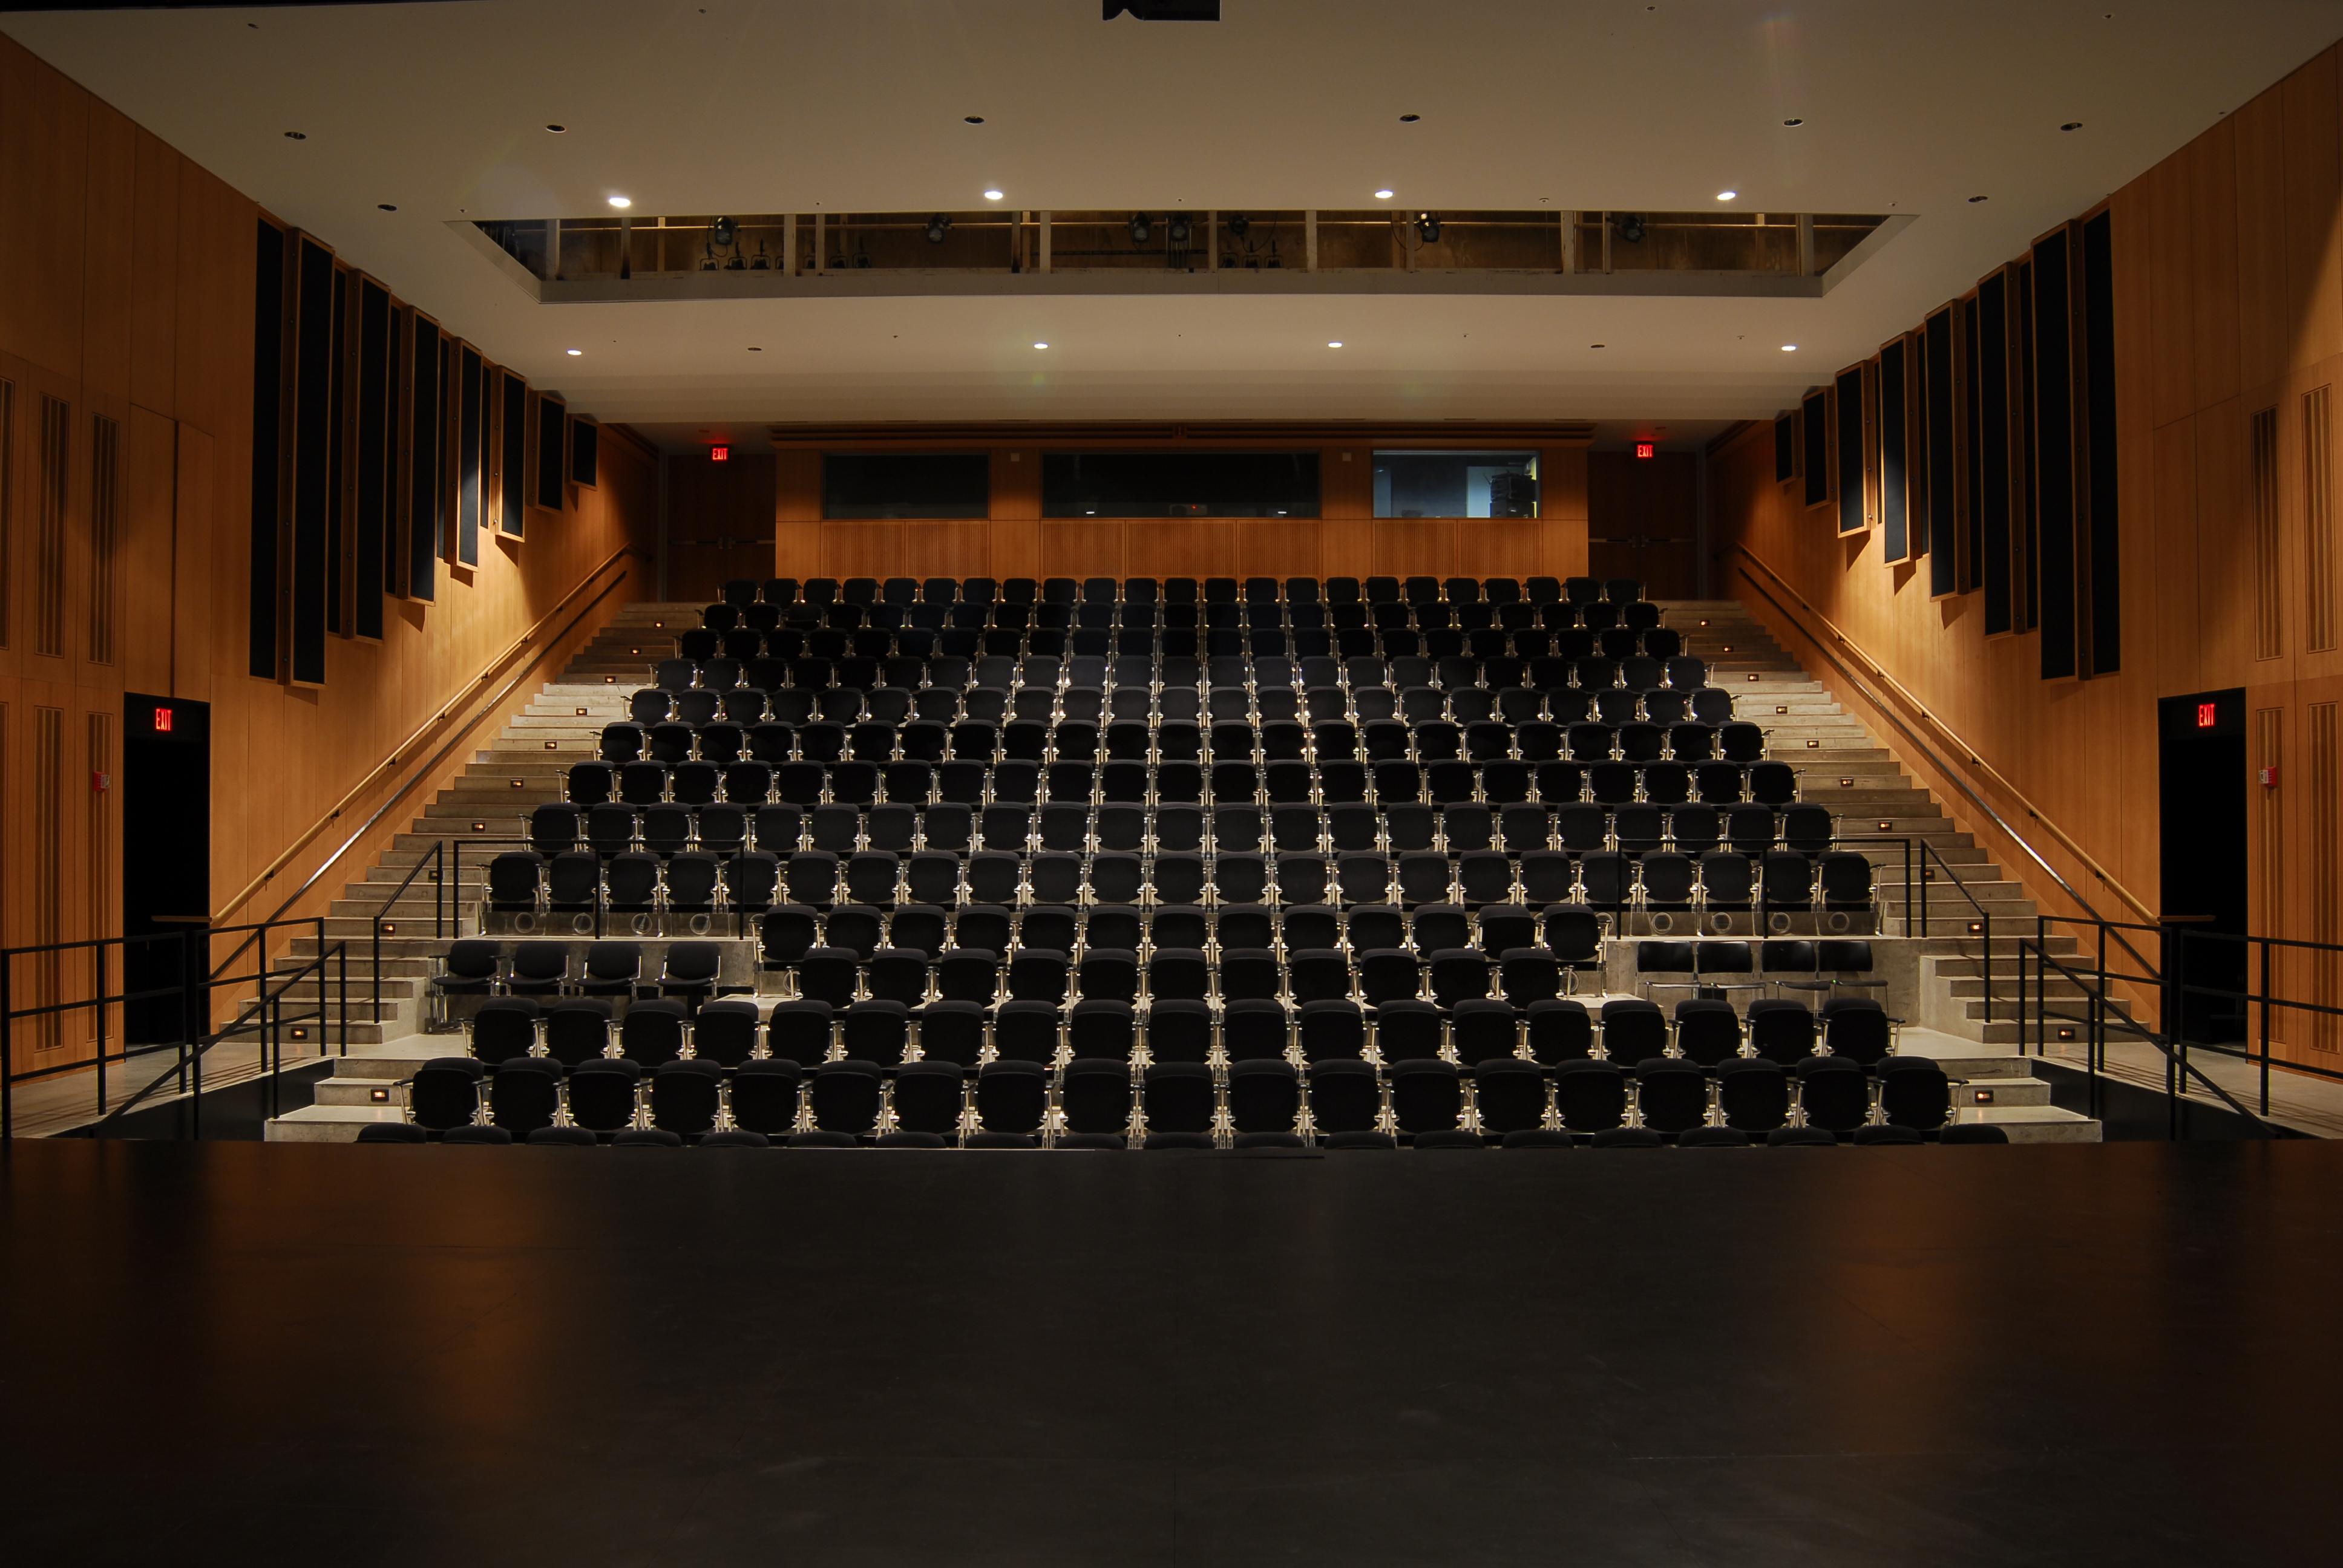 school auditorium seating layout plan